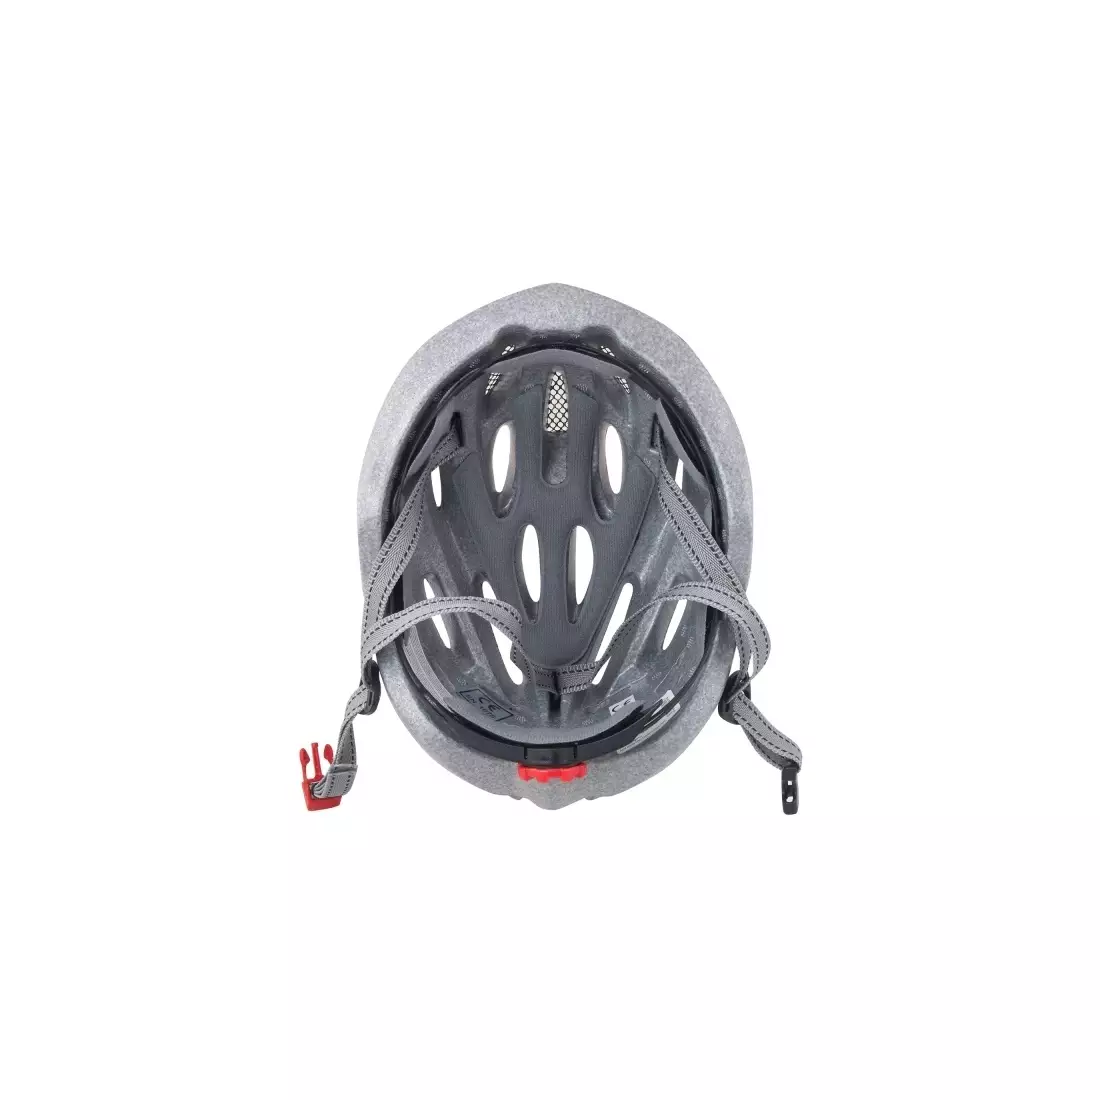 FORCE bicycle helmet HAL, black, 902475